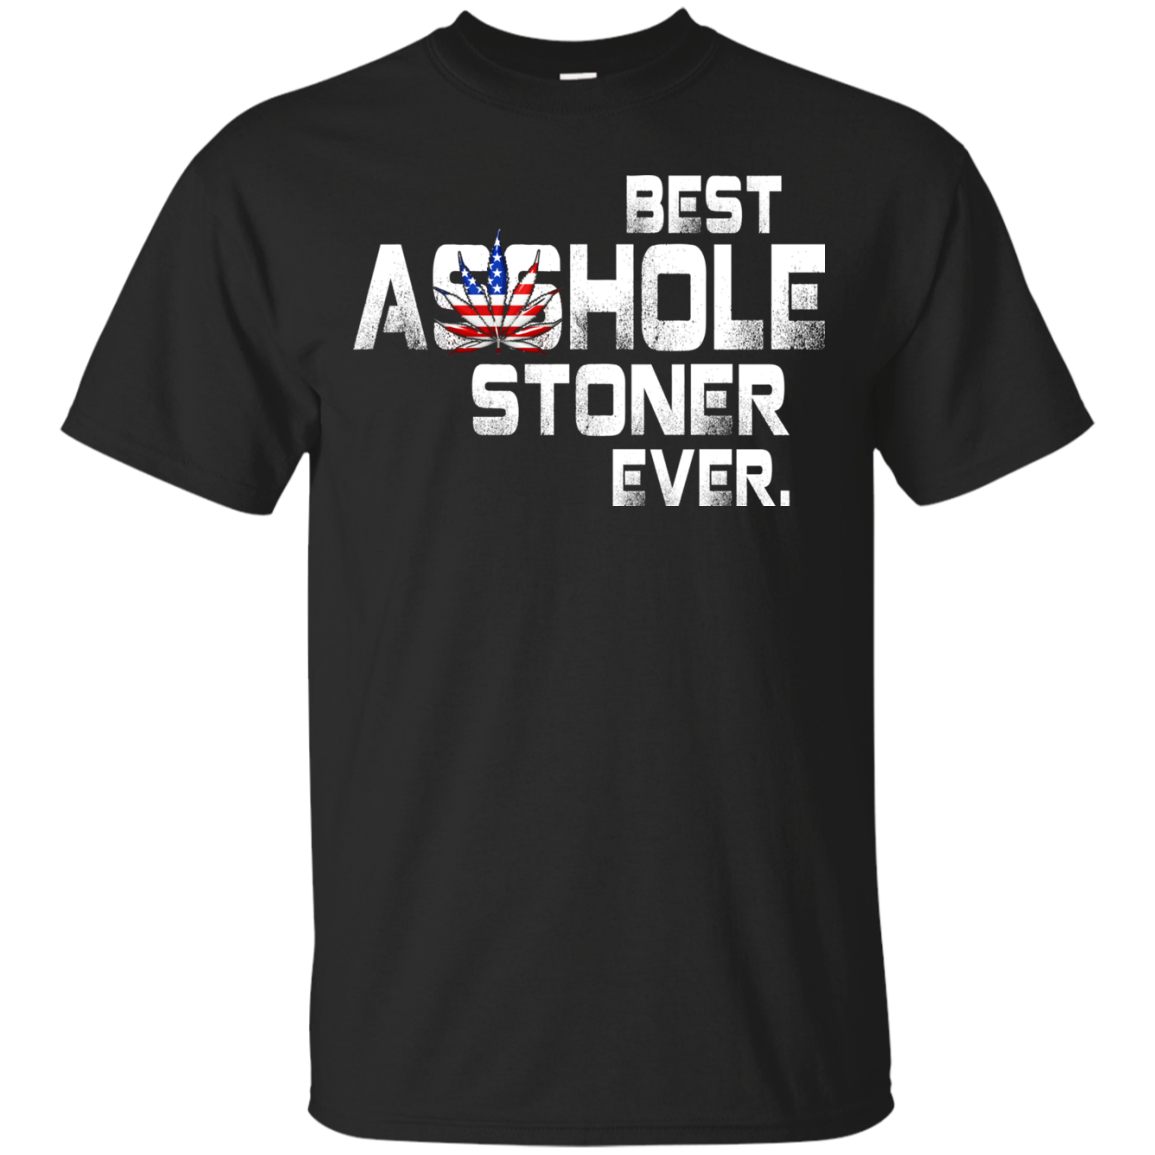 Best Asshole Stoner Ever shirt, tank top